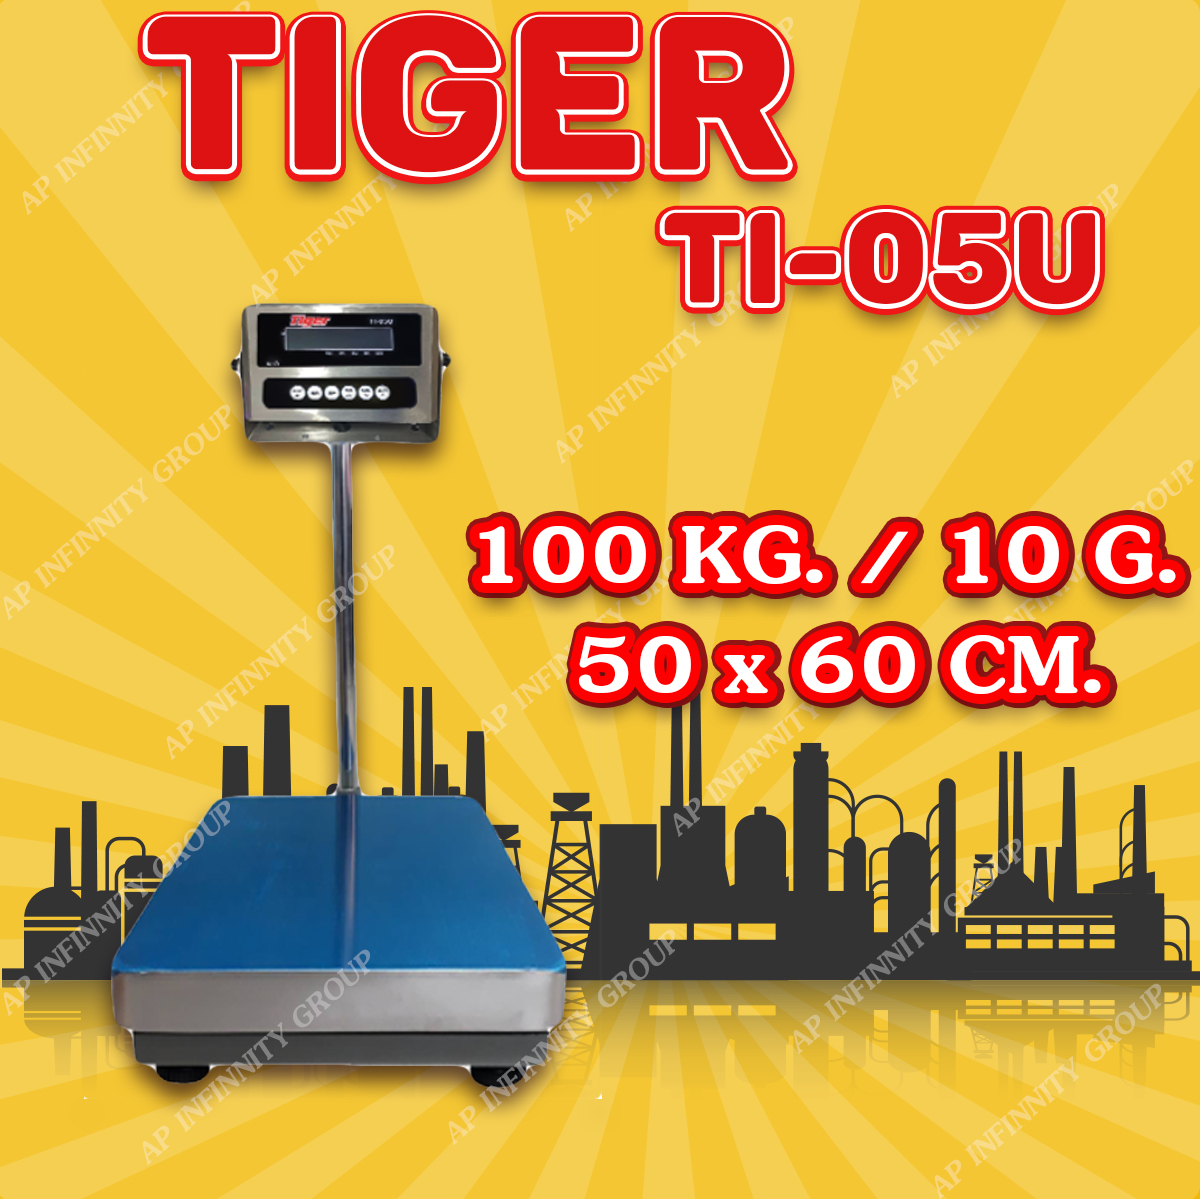 ตาชั่งดิจิตอล เครื่องชั่งดิจิตอล เครื่องชั่งตั้งพื้น 100kg ความละเอียด 10g ยี่ห้อ Tiger รุ่น TI–05U รูปที่ 1